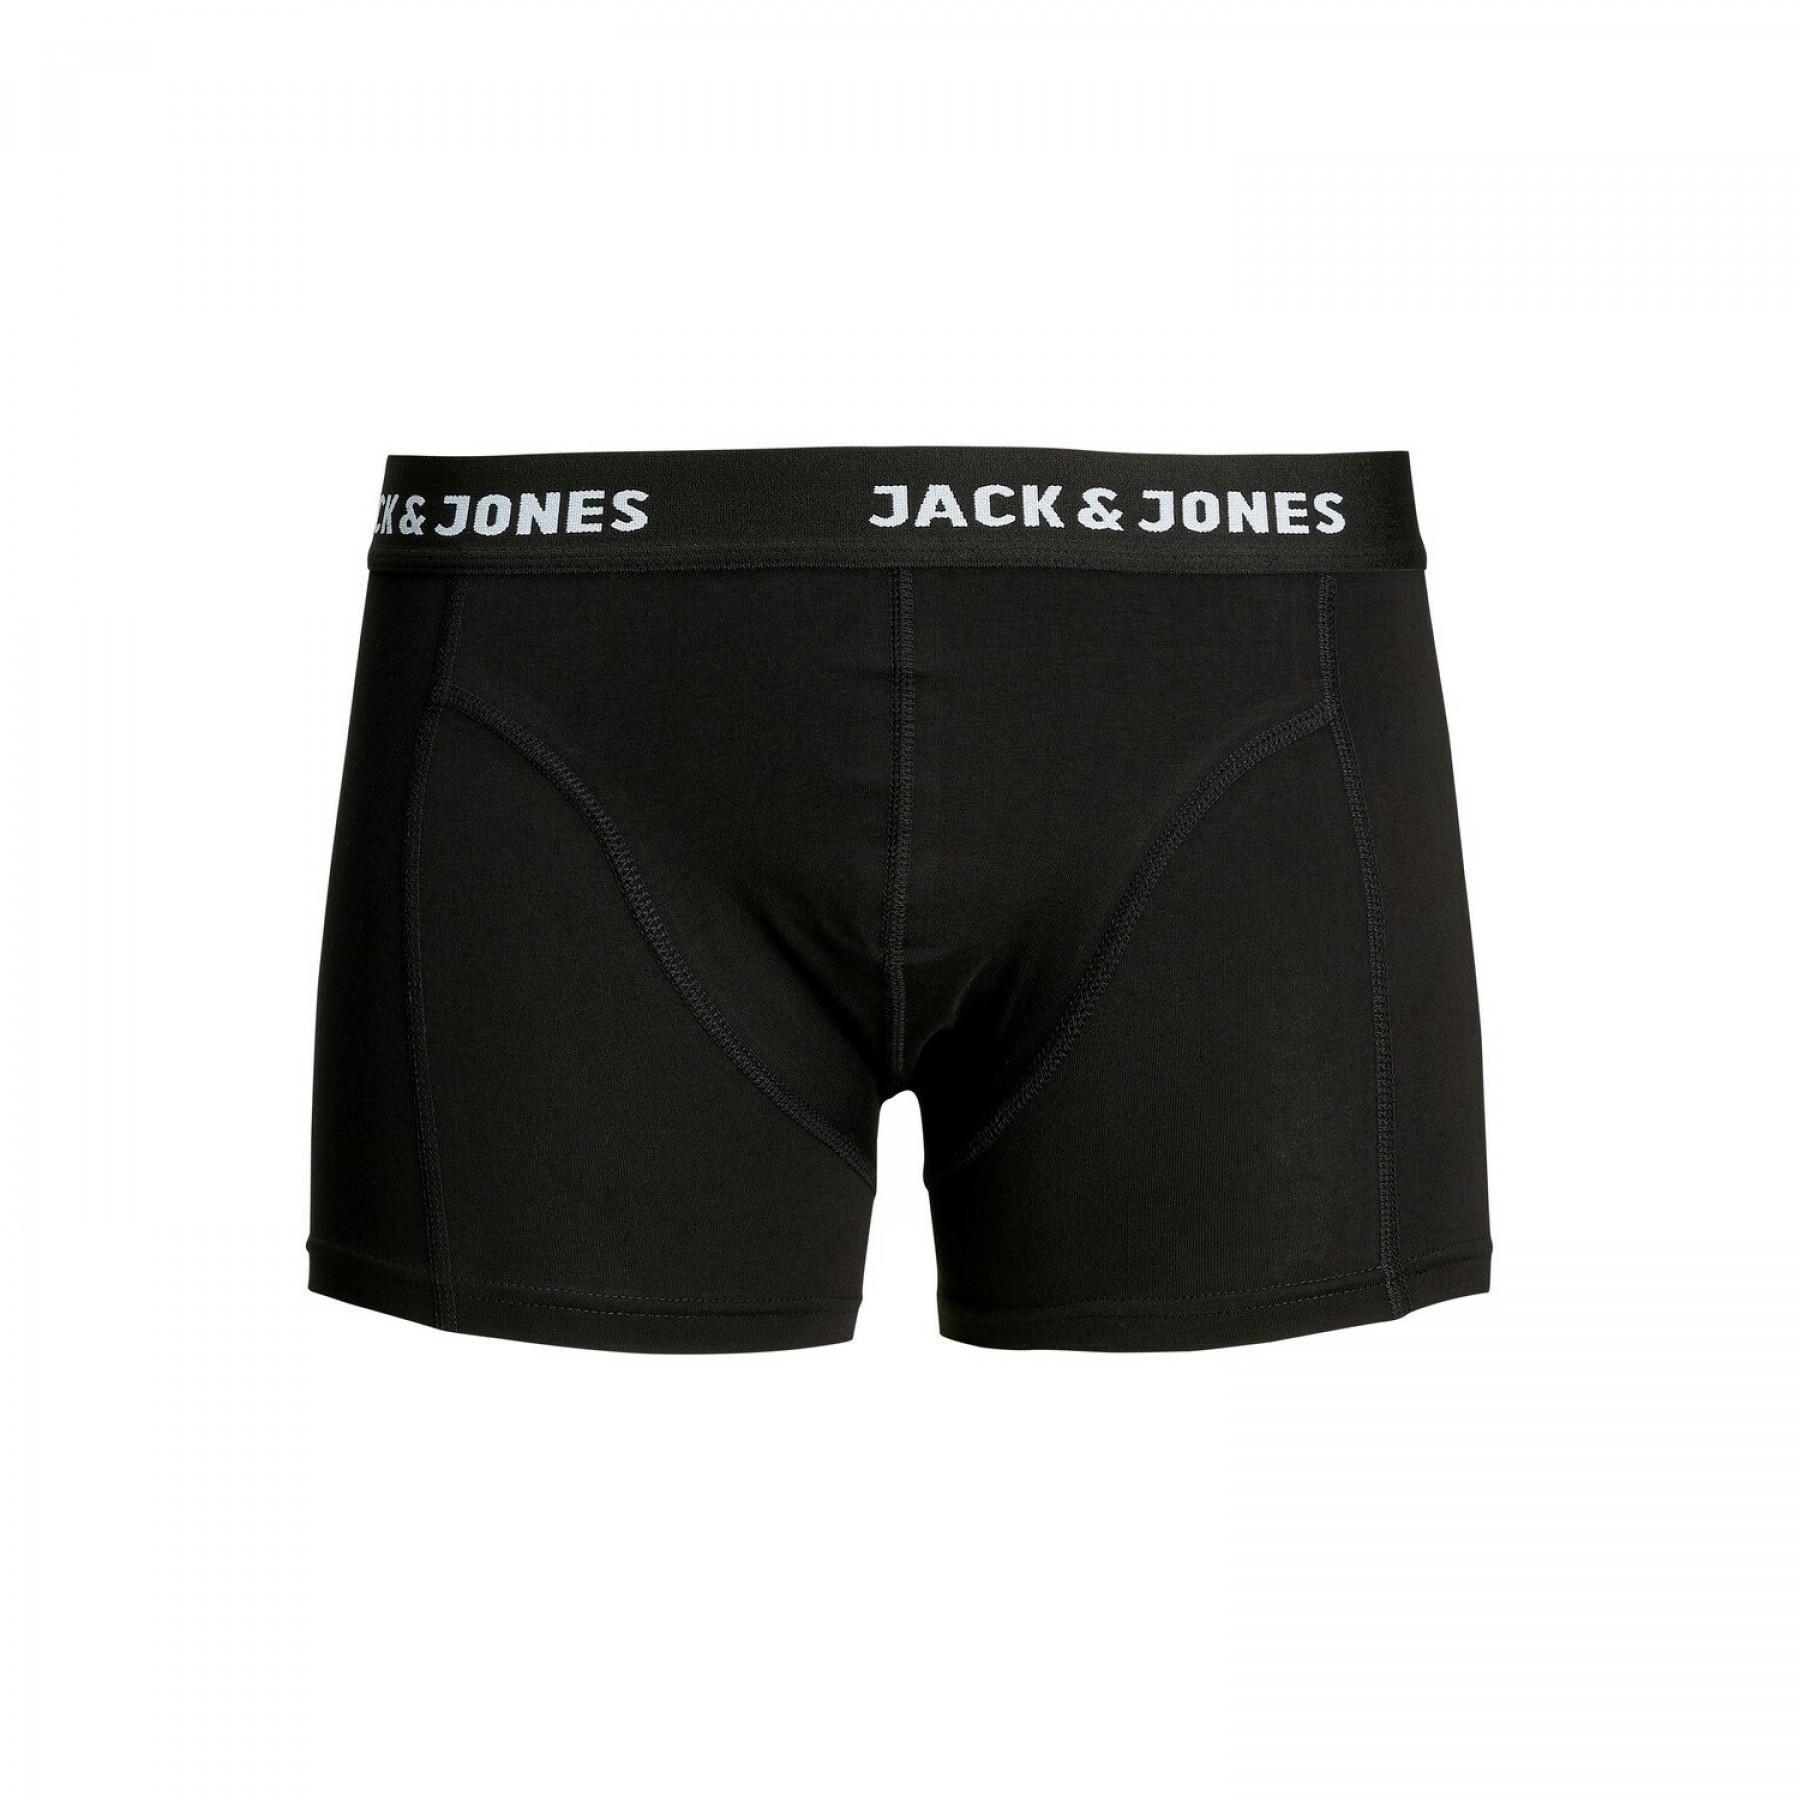 Set van 3 boxershorts Jack & Jones jacanthony